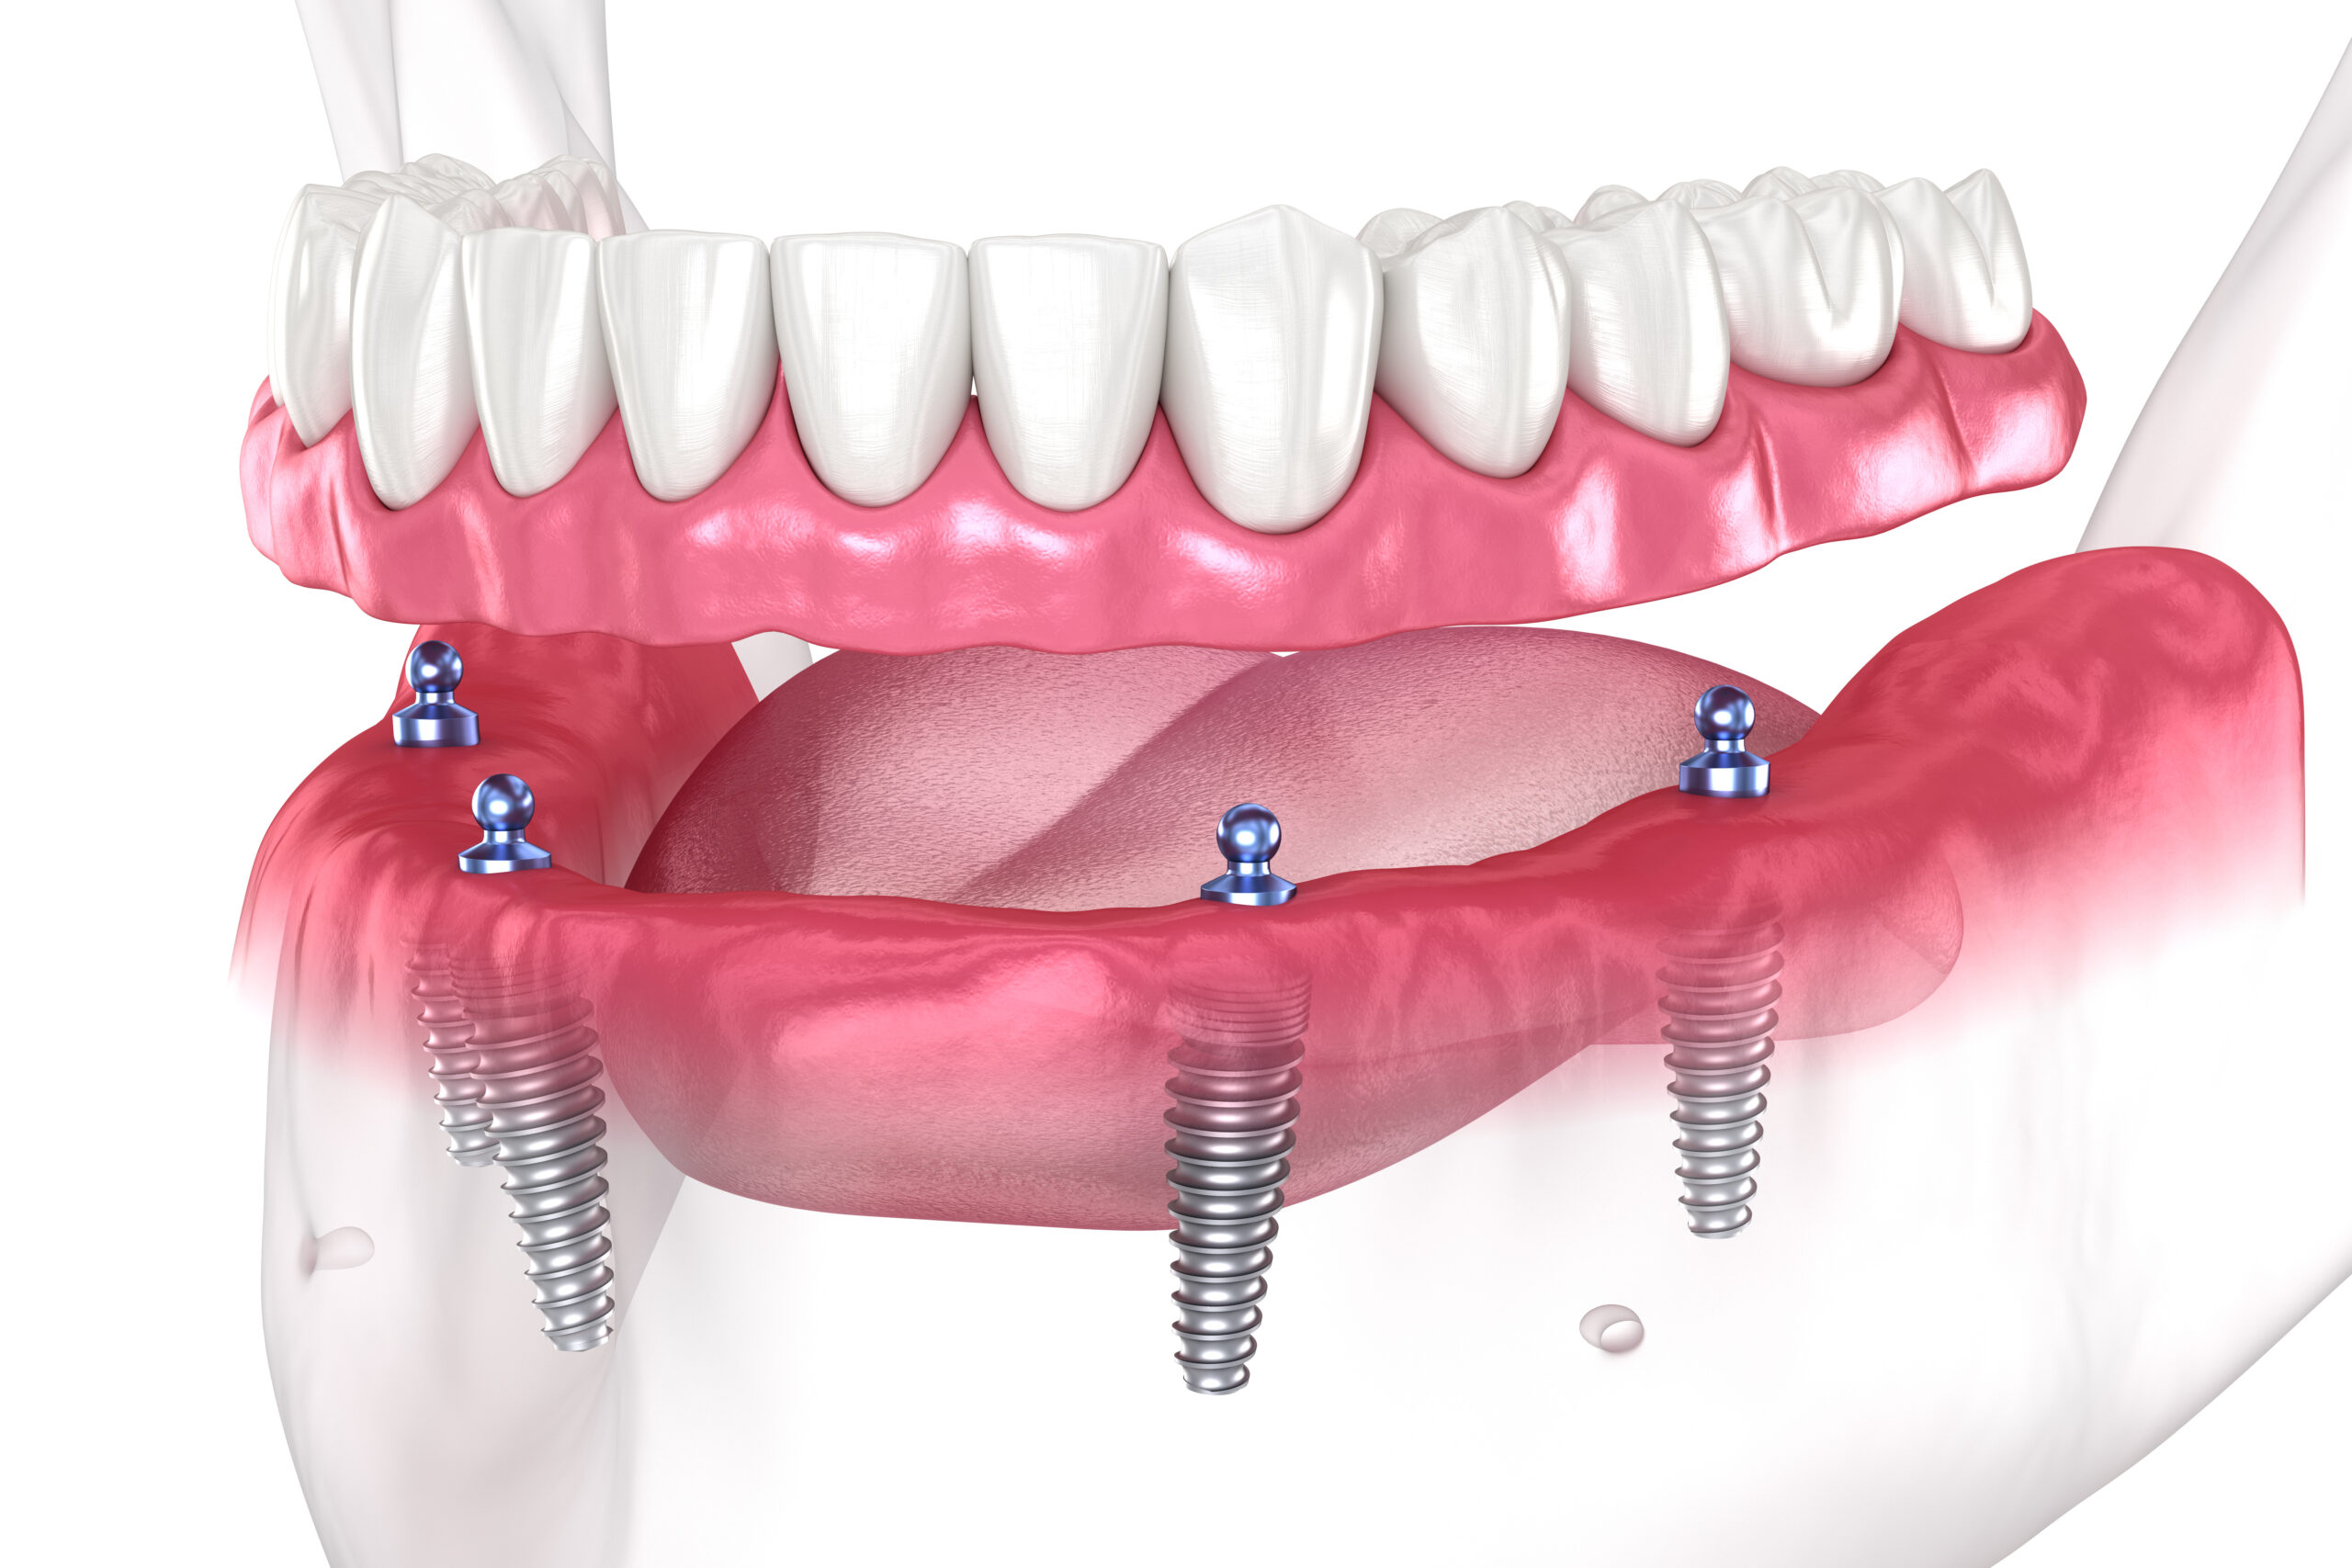 Dental prosthesis based on 4 implants. Dental 3D illustration.